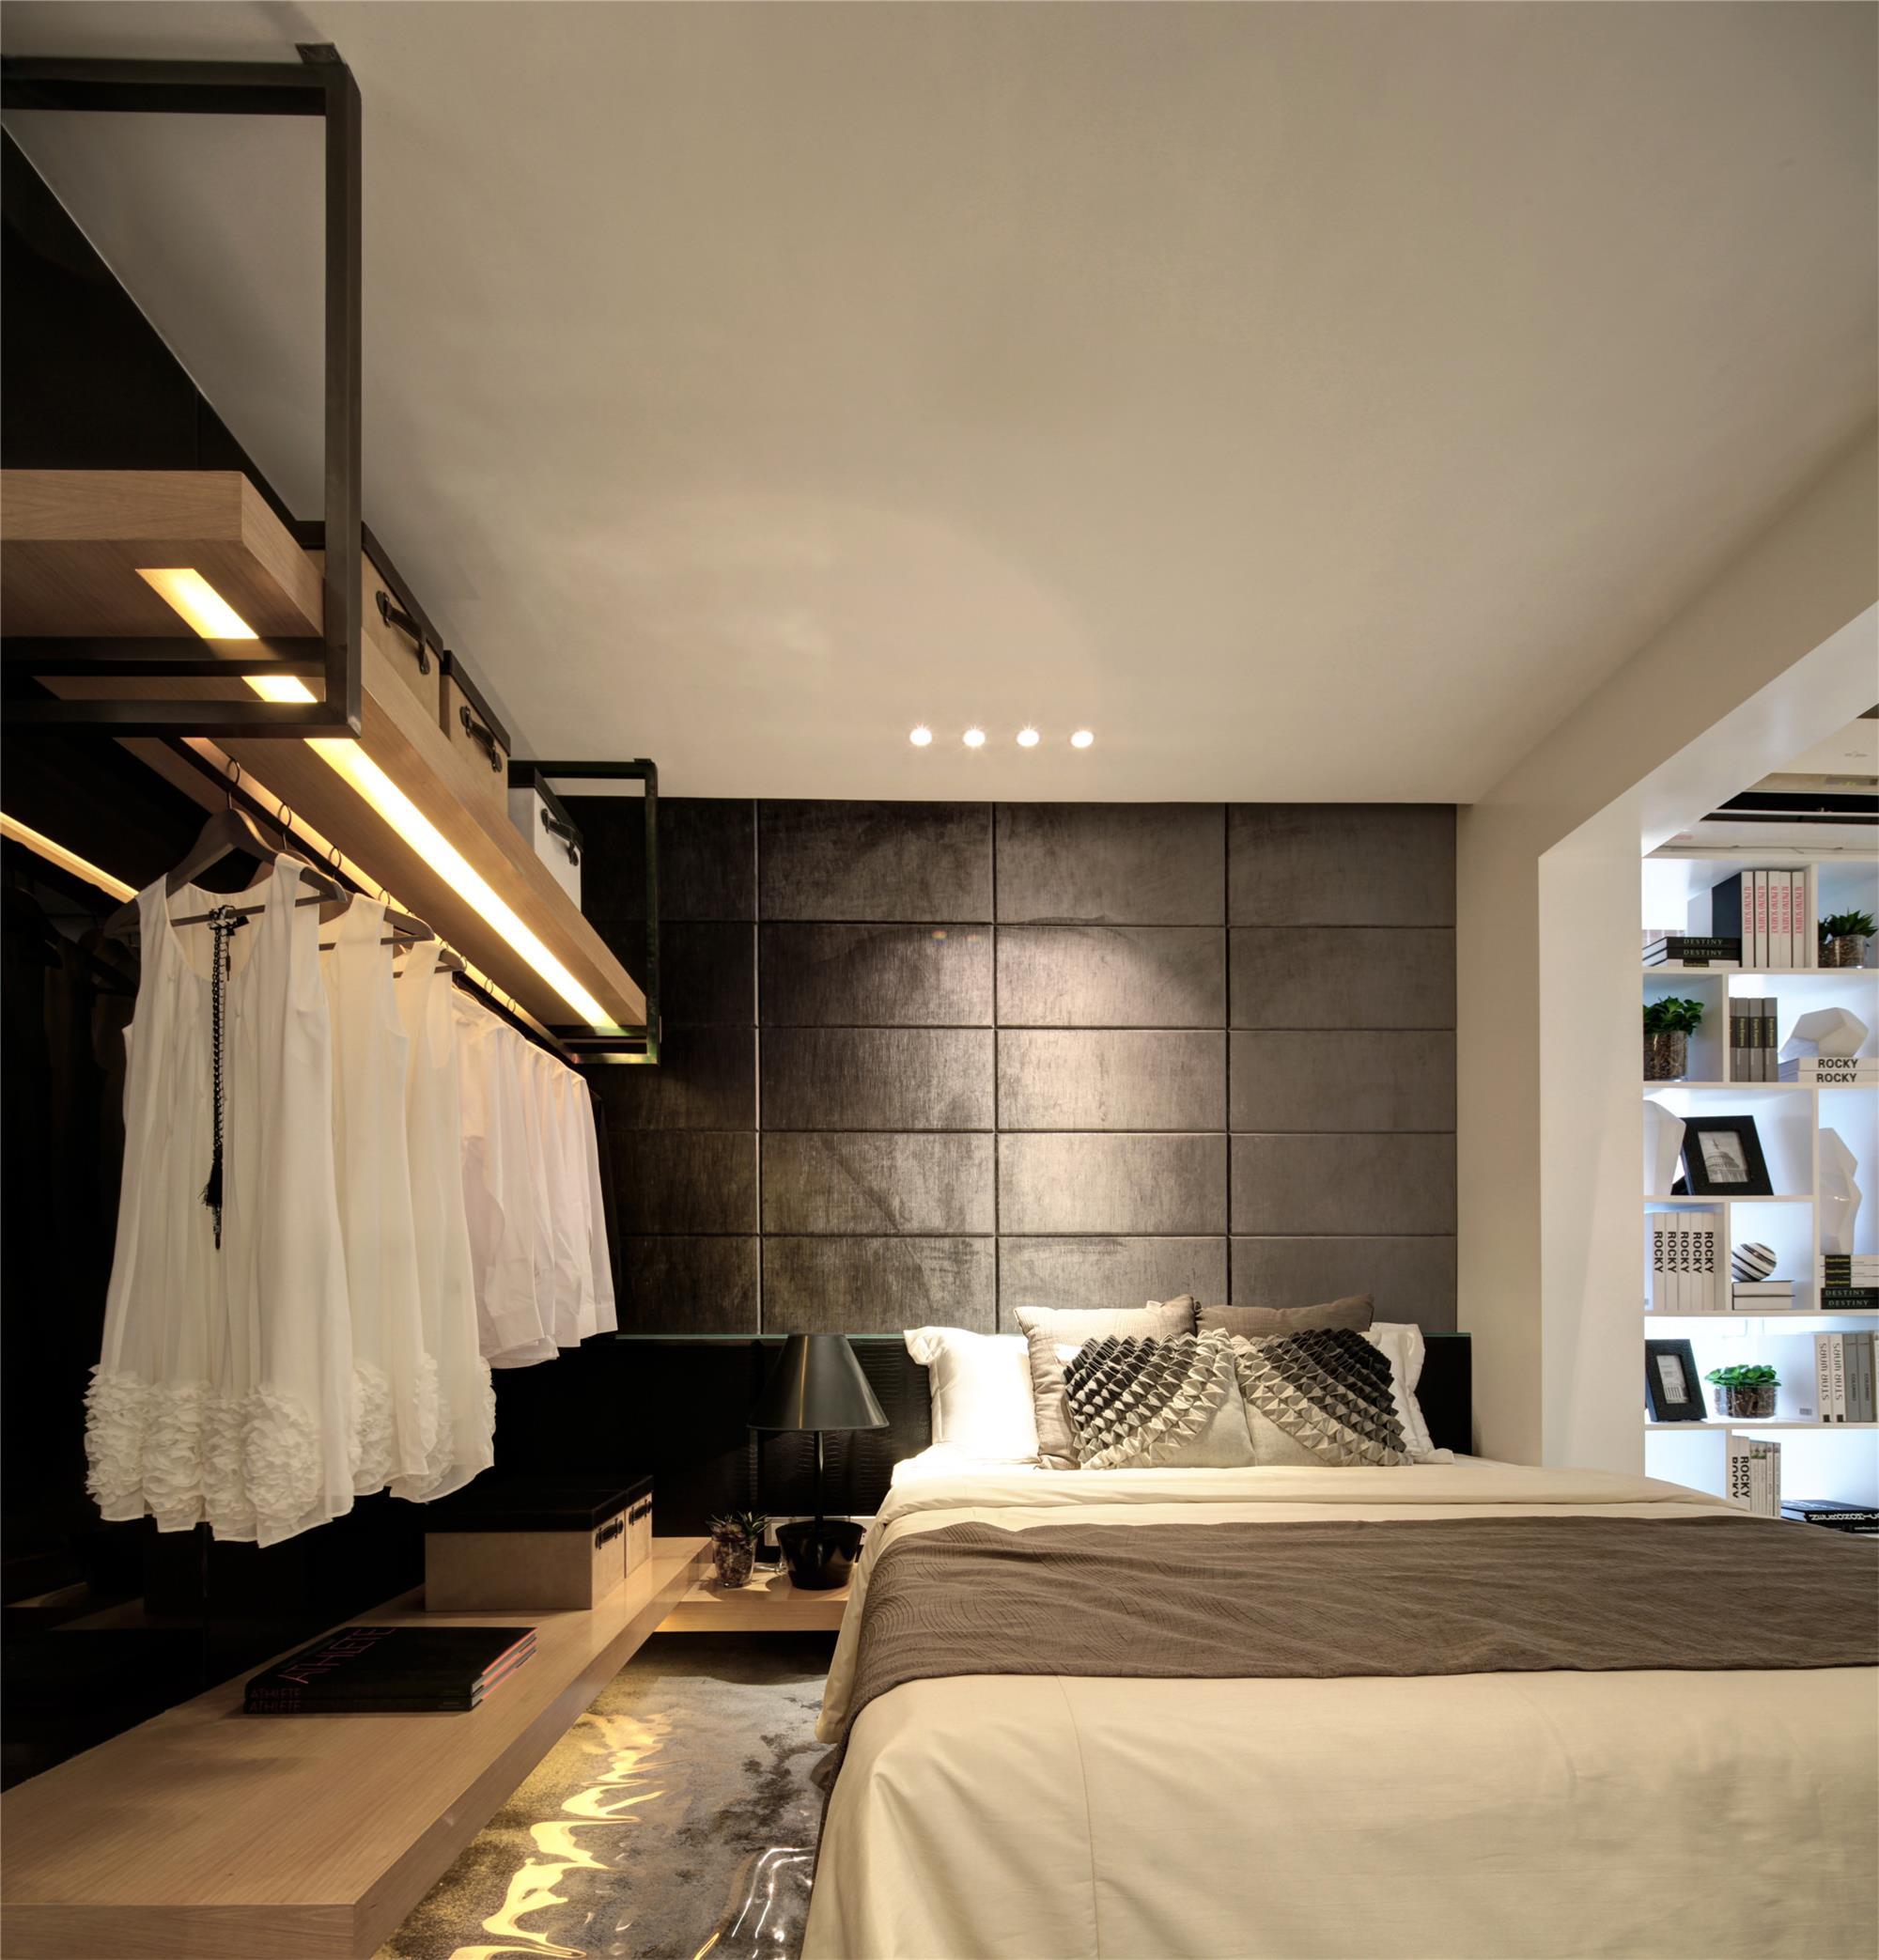 黑白灰现代简约三居卧室装修效果图